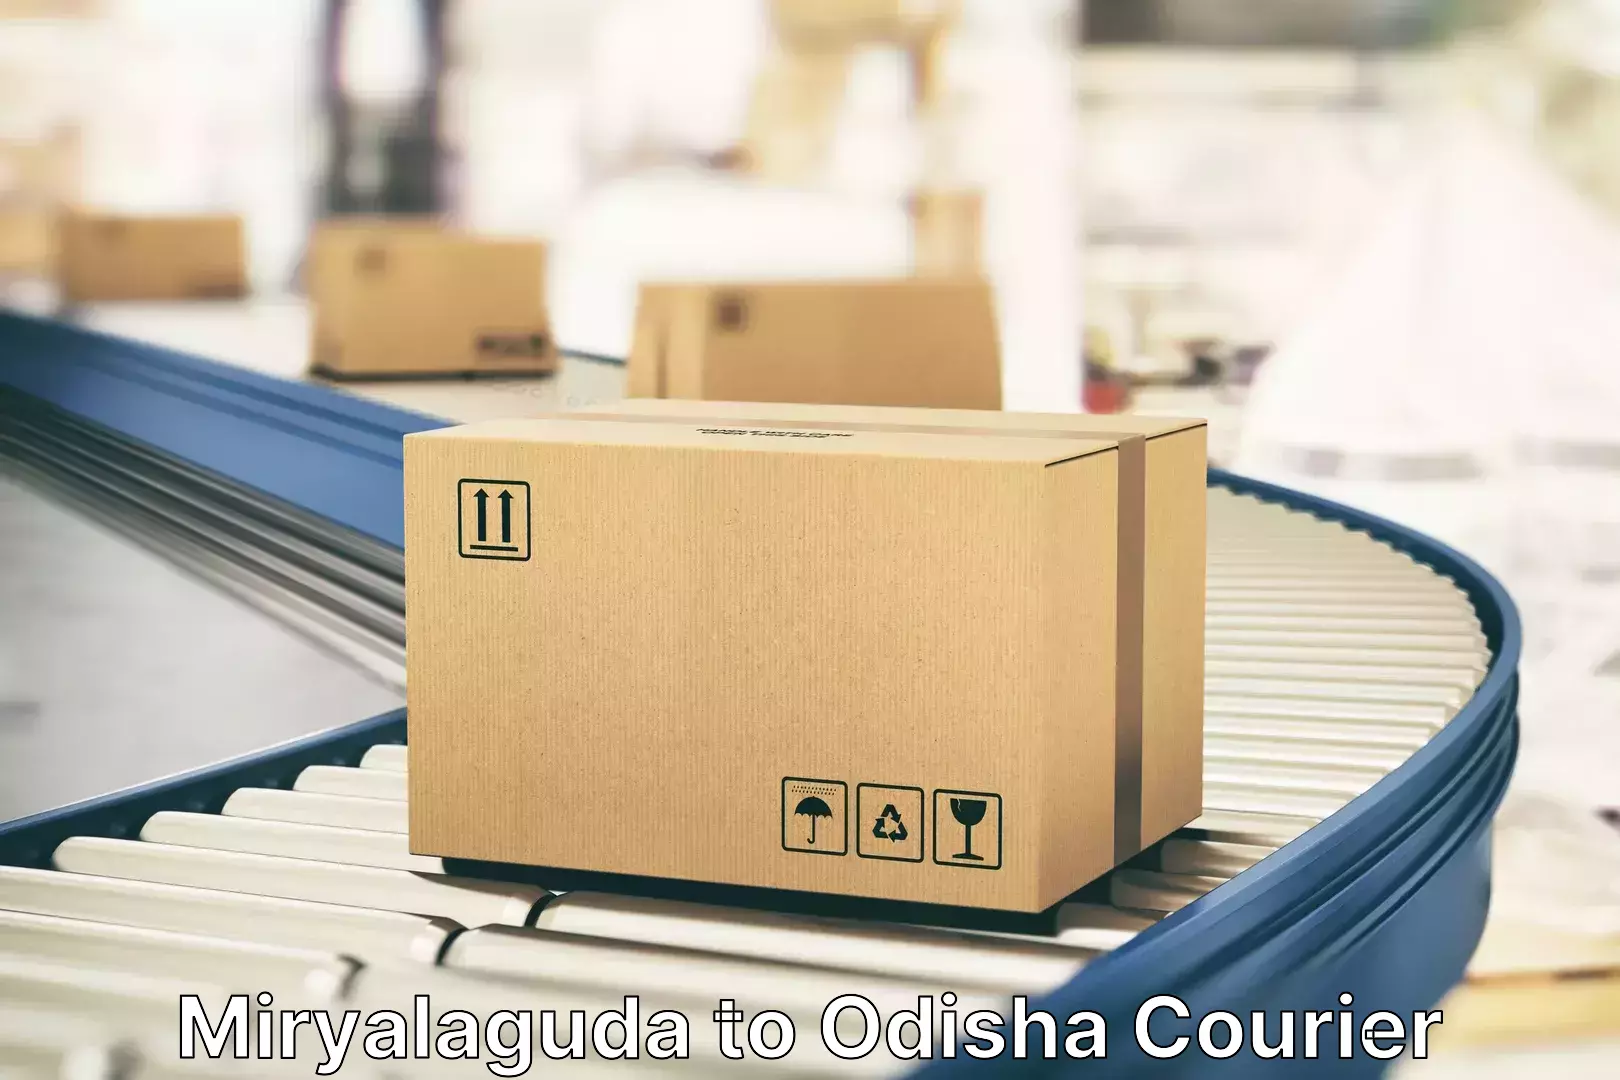 Luggage shipment processing Miryalaguda to Odisha